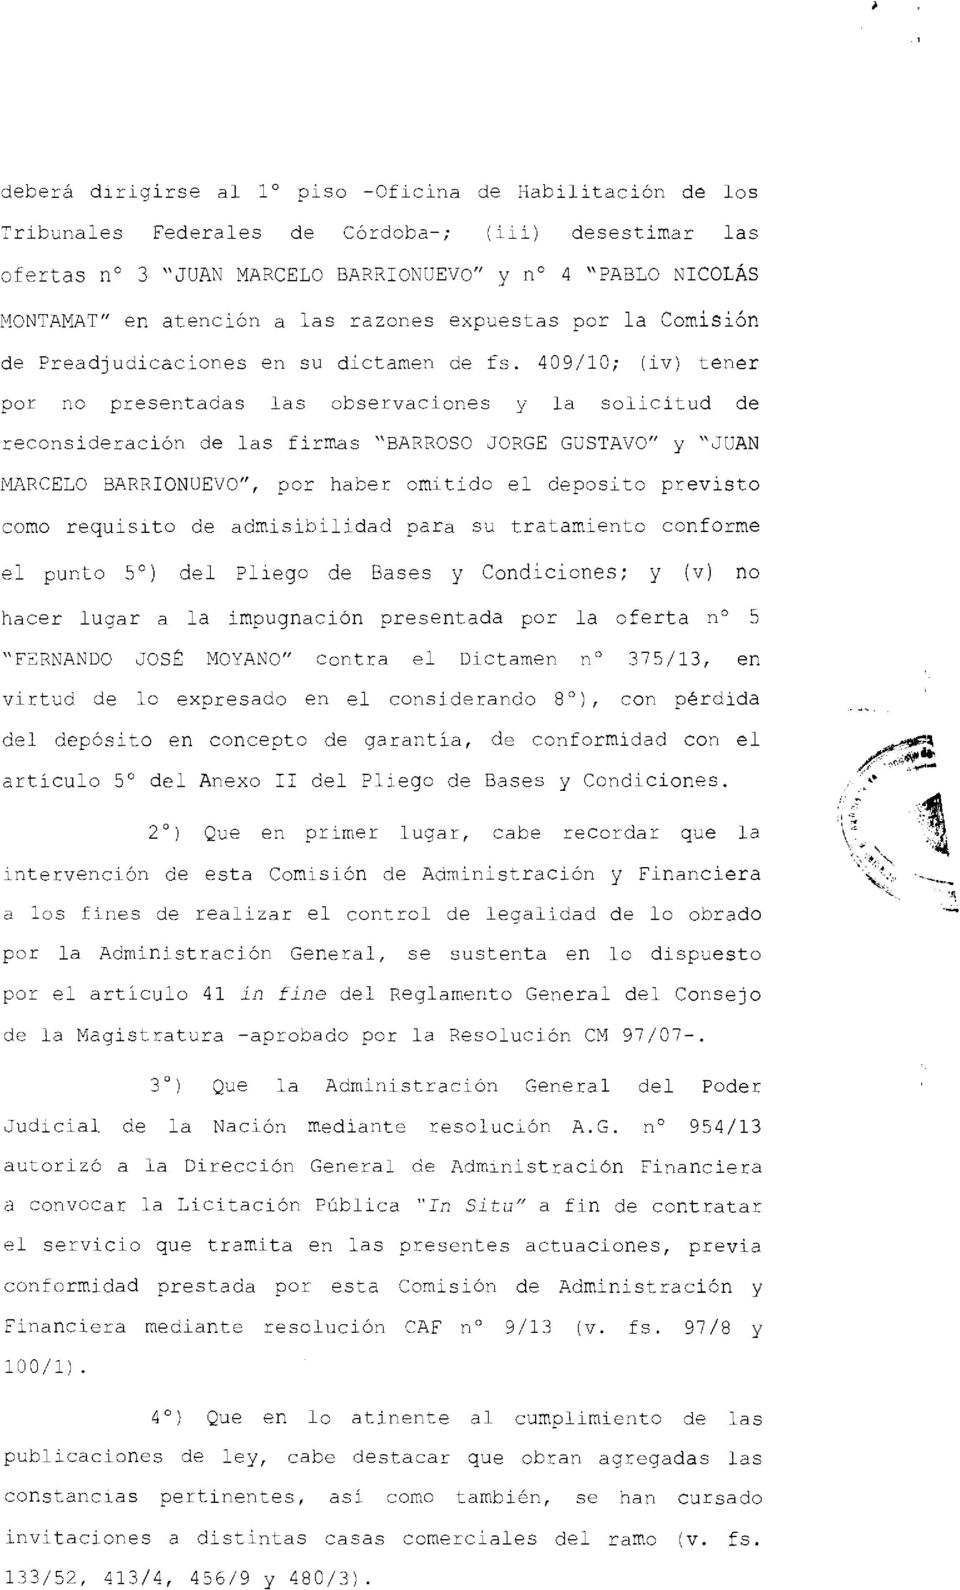 409/10; (iv) tener por no presentadas las observaciones y la solicitud de reconsideración de las firmas "BARROSO JORGE GUSTAVO" y "JUAN MARCELO BARRIONUEVO", por haber omitido el deposito previsto